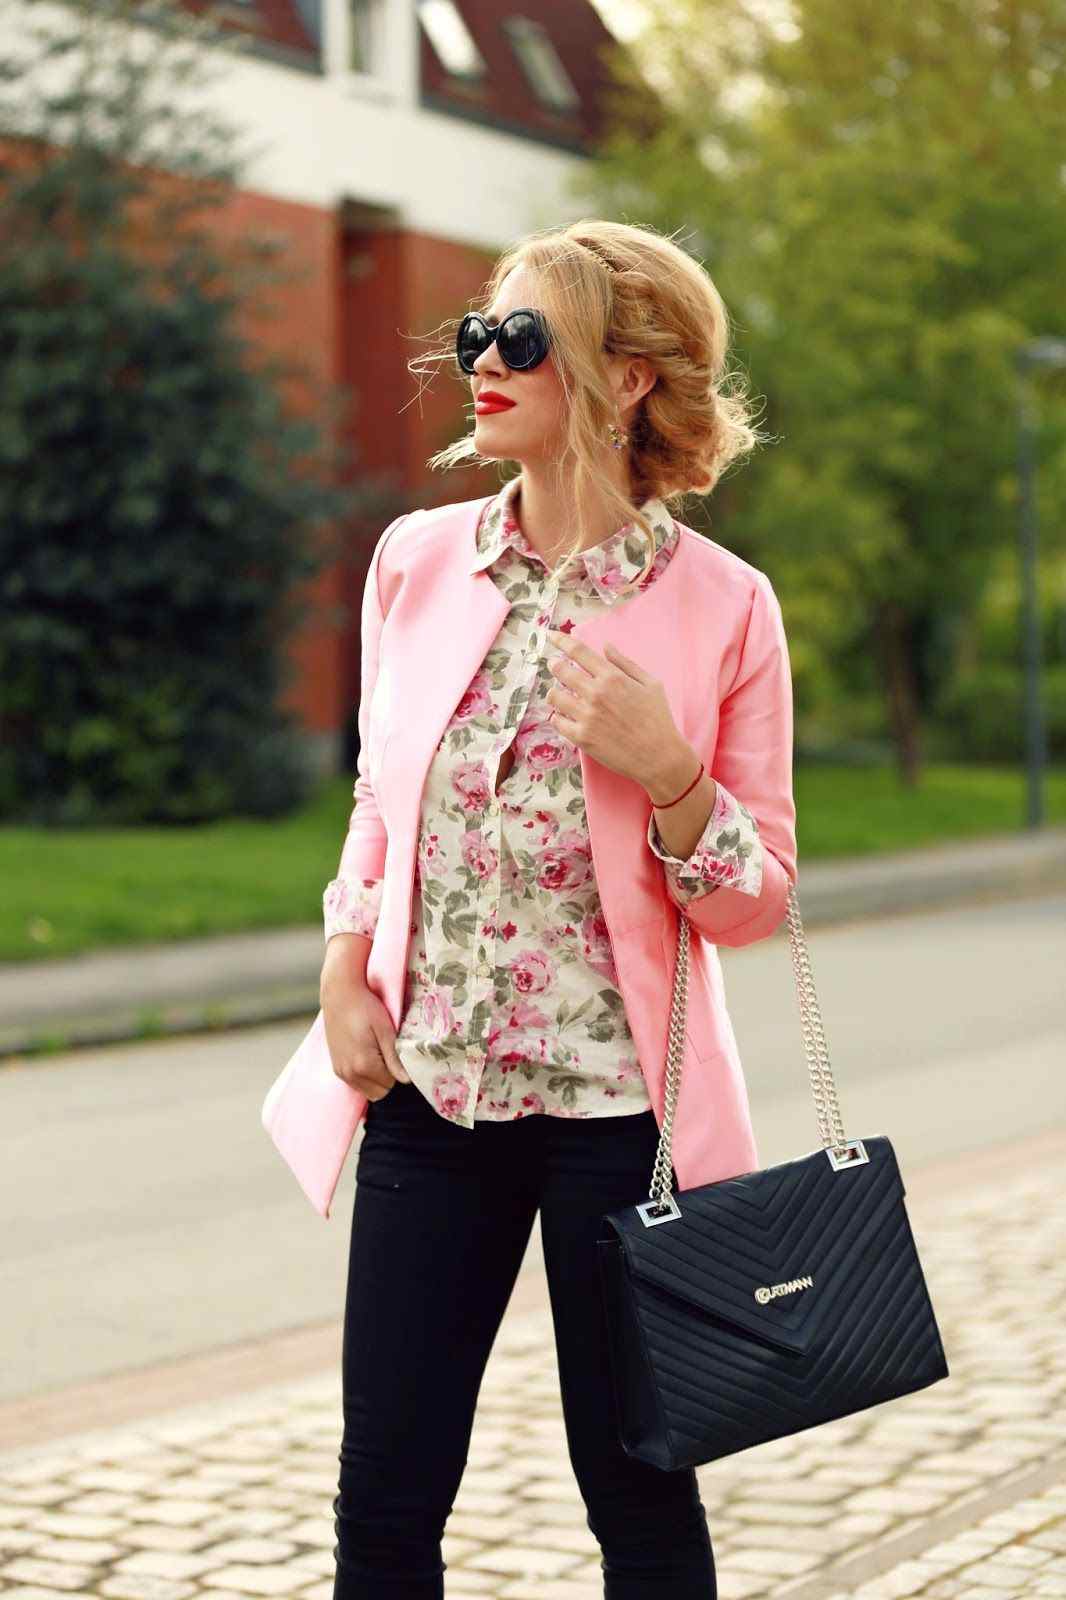 Hemdbluze mit Blumenmuster kombinieren rosa Blazer schwarzr Hose Ledertasche Modetrends